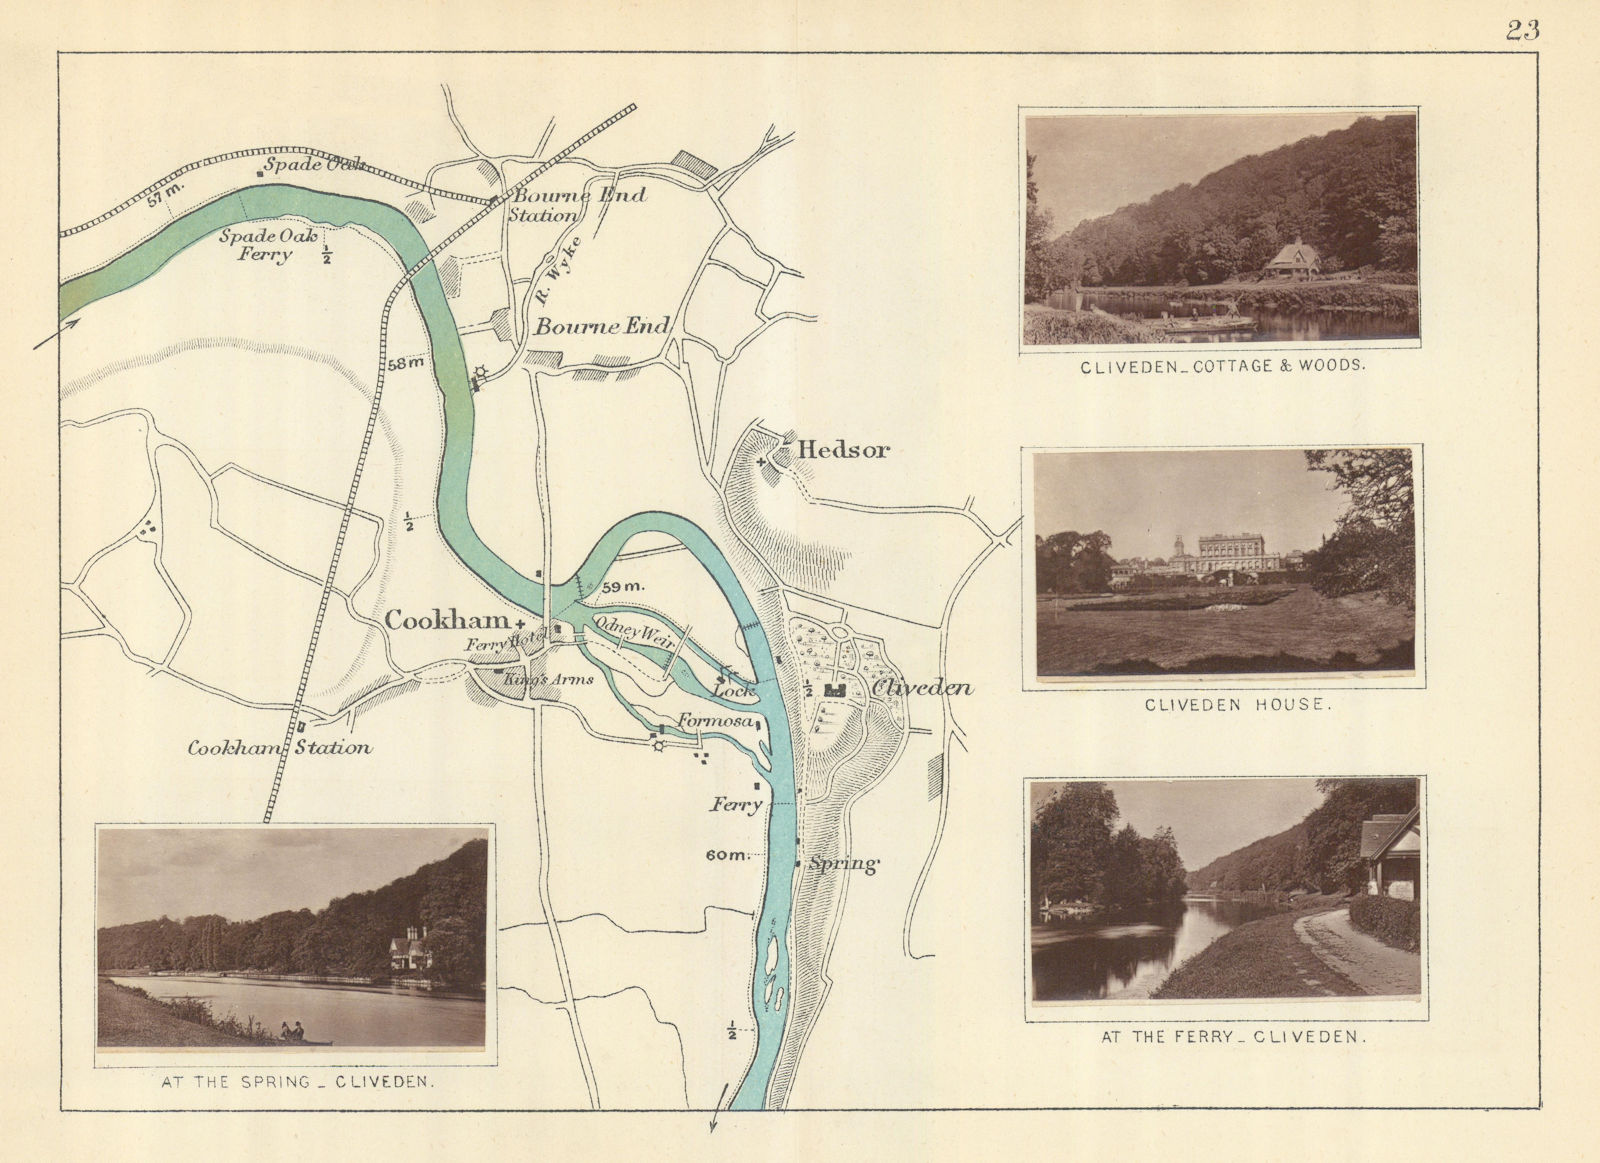 RIVER THAMES - Bourne End - Cookham - Hedsor - Cliveden. TAUNT 1879 old map